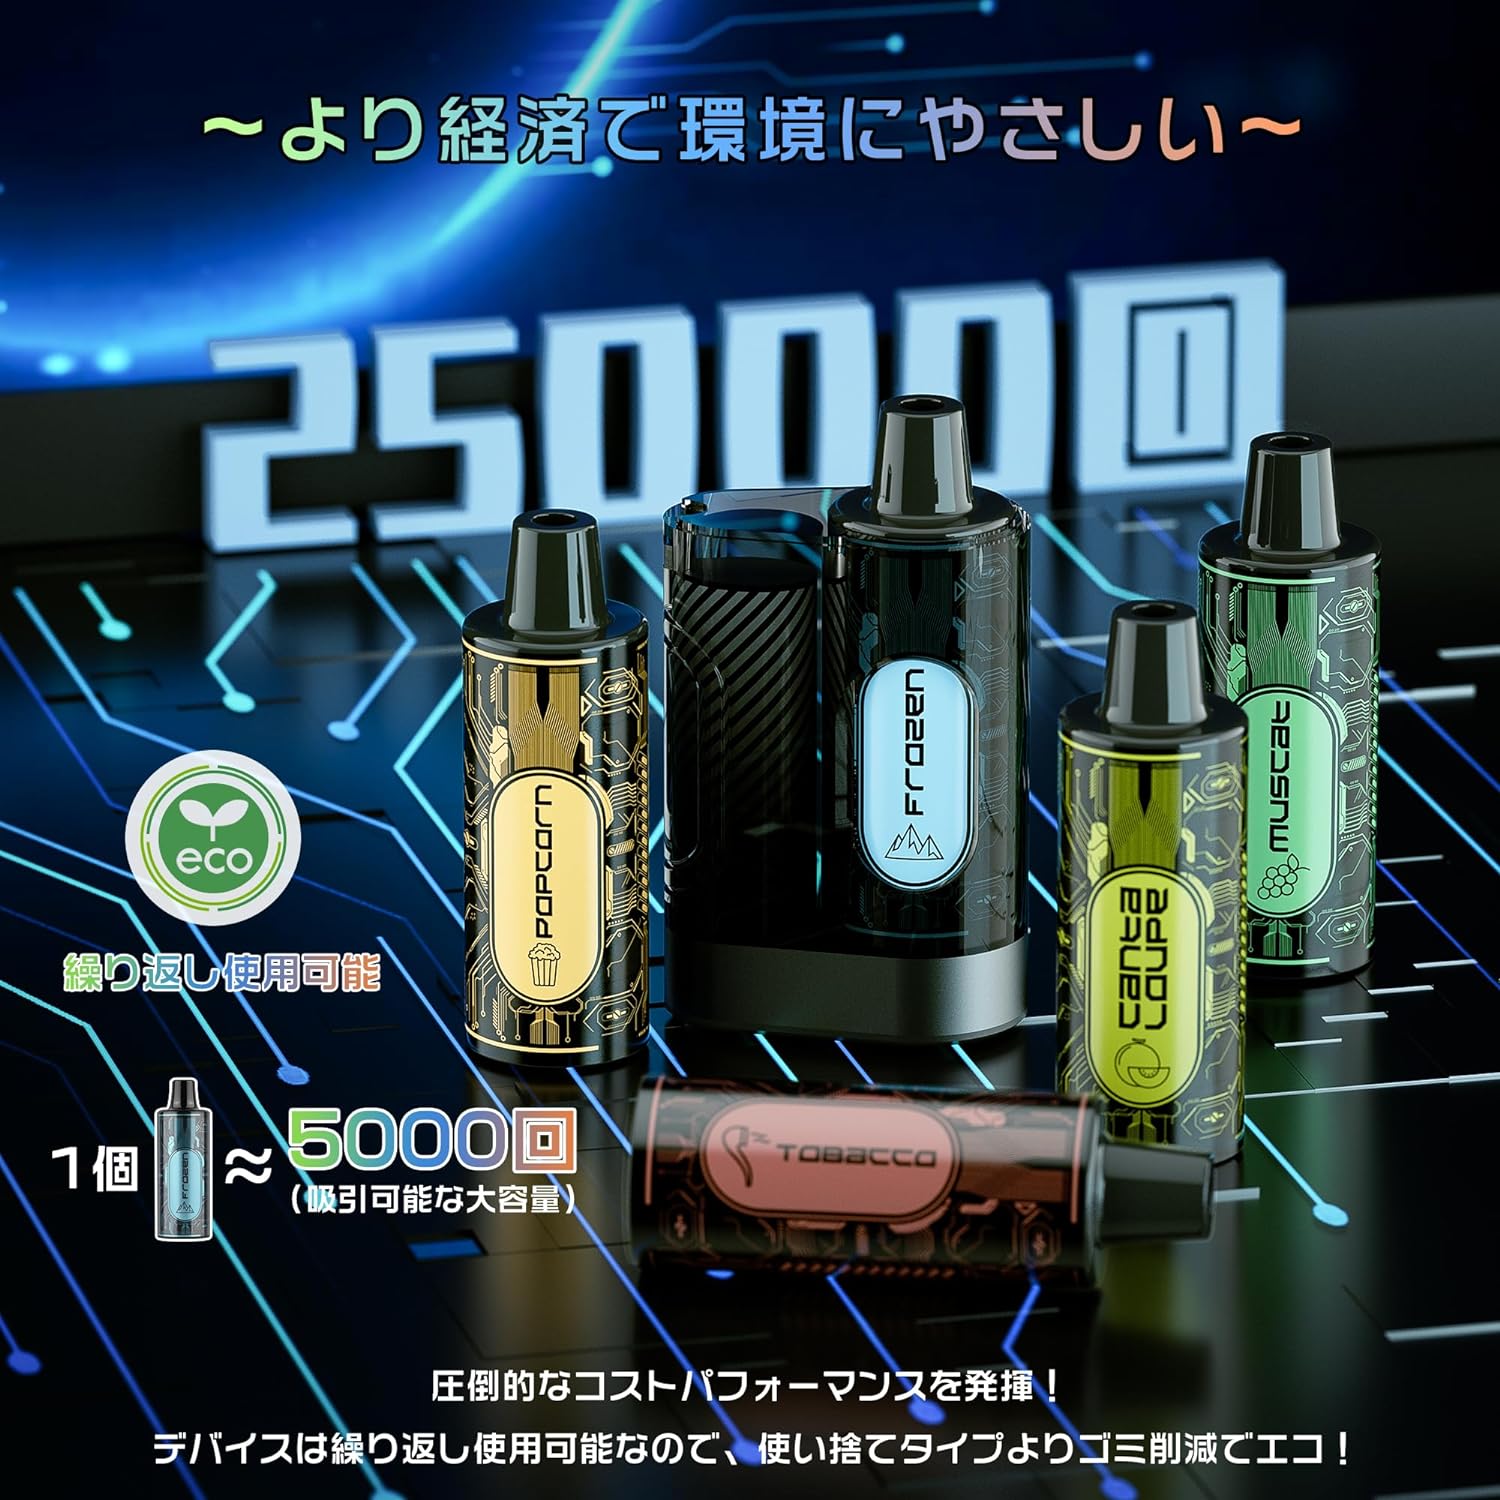 ARASHI 電子タバコ カートリッジ交換可能 25000回吸引 持ち運び便利 ニコチン0 タール0 使い捨て ポッド5個付き I3（MIX-2）